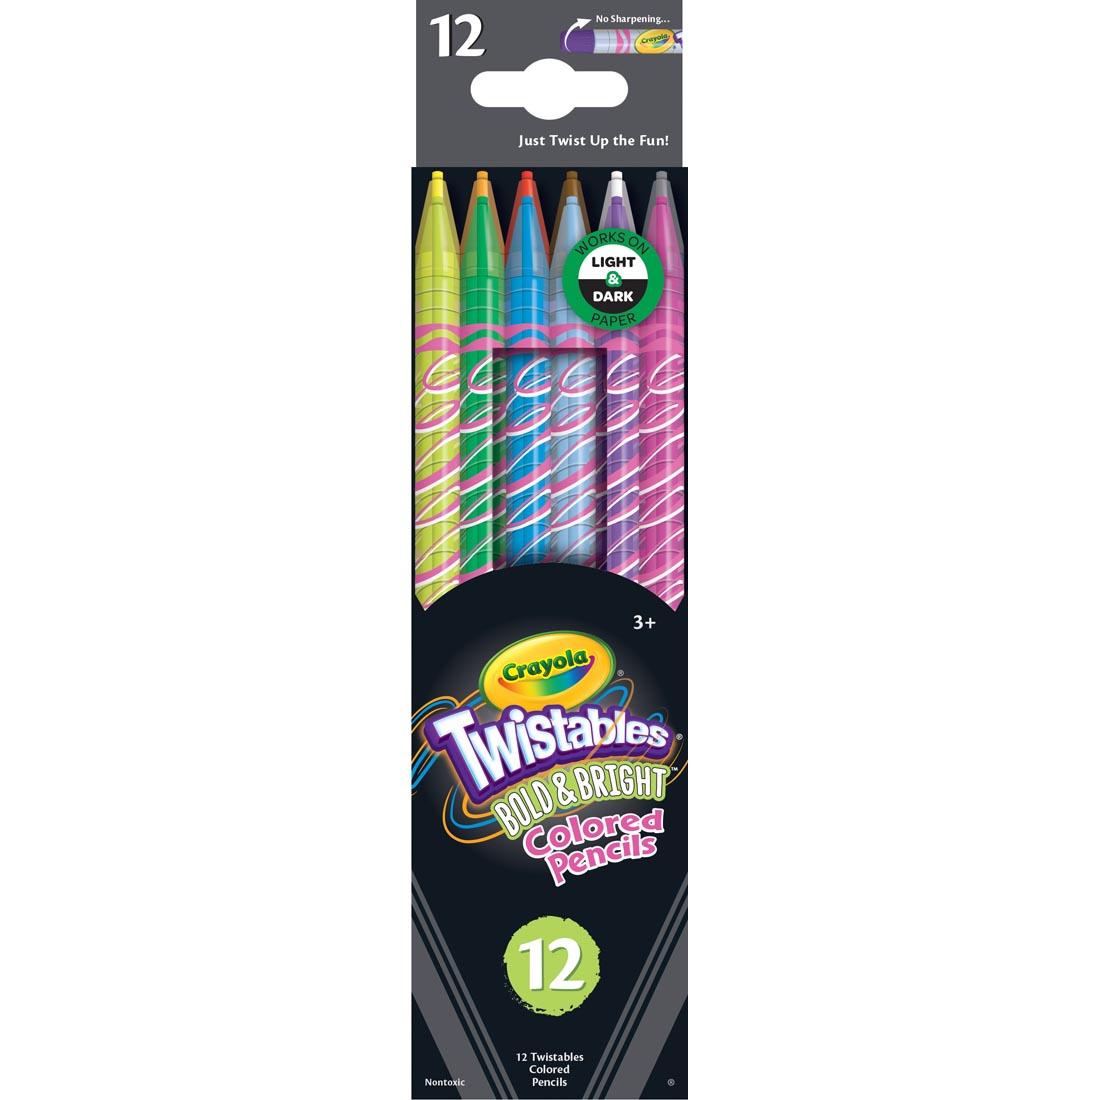 Crayola Twistables Bold & Bright Colored Pencils 12-Color Set